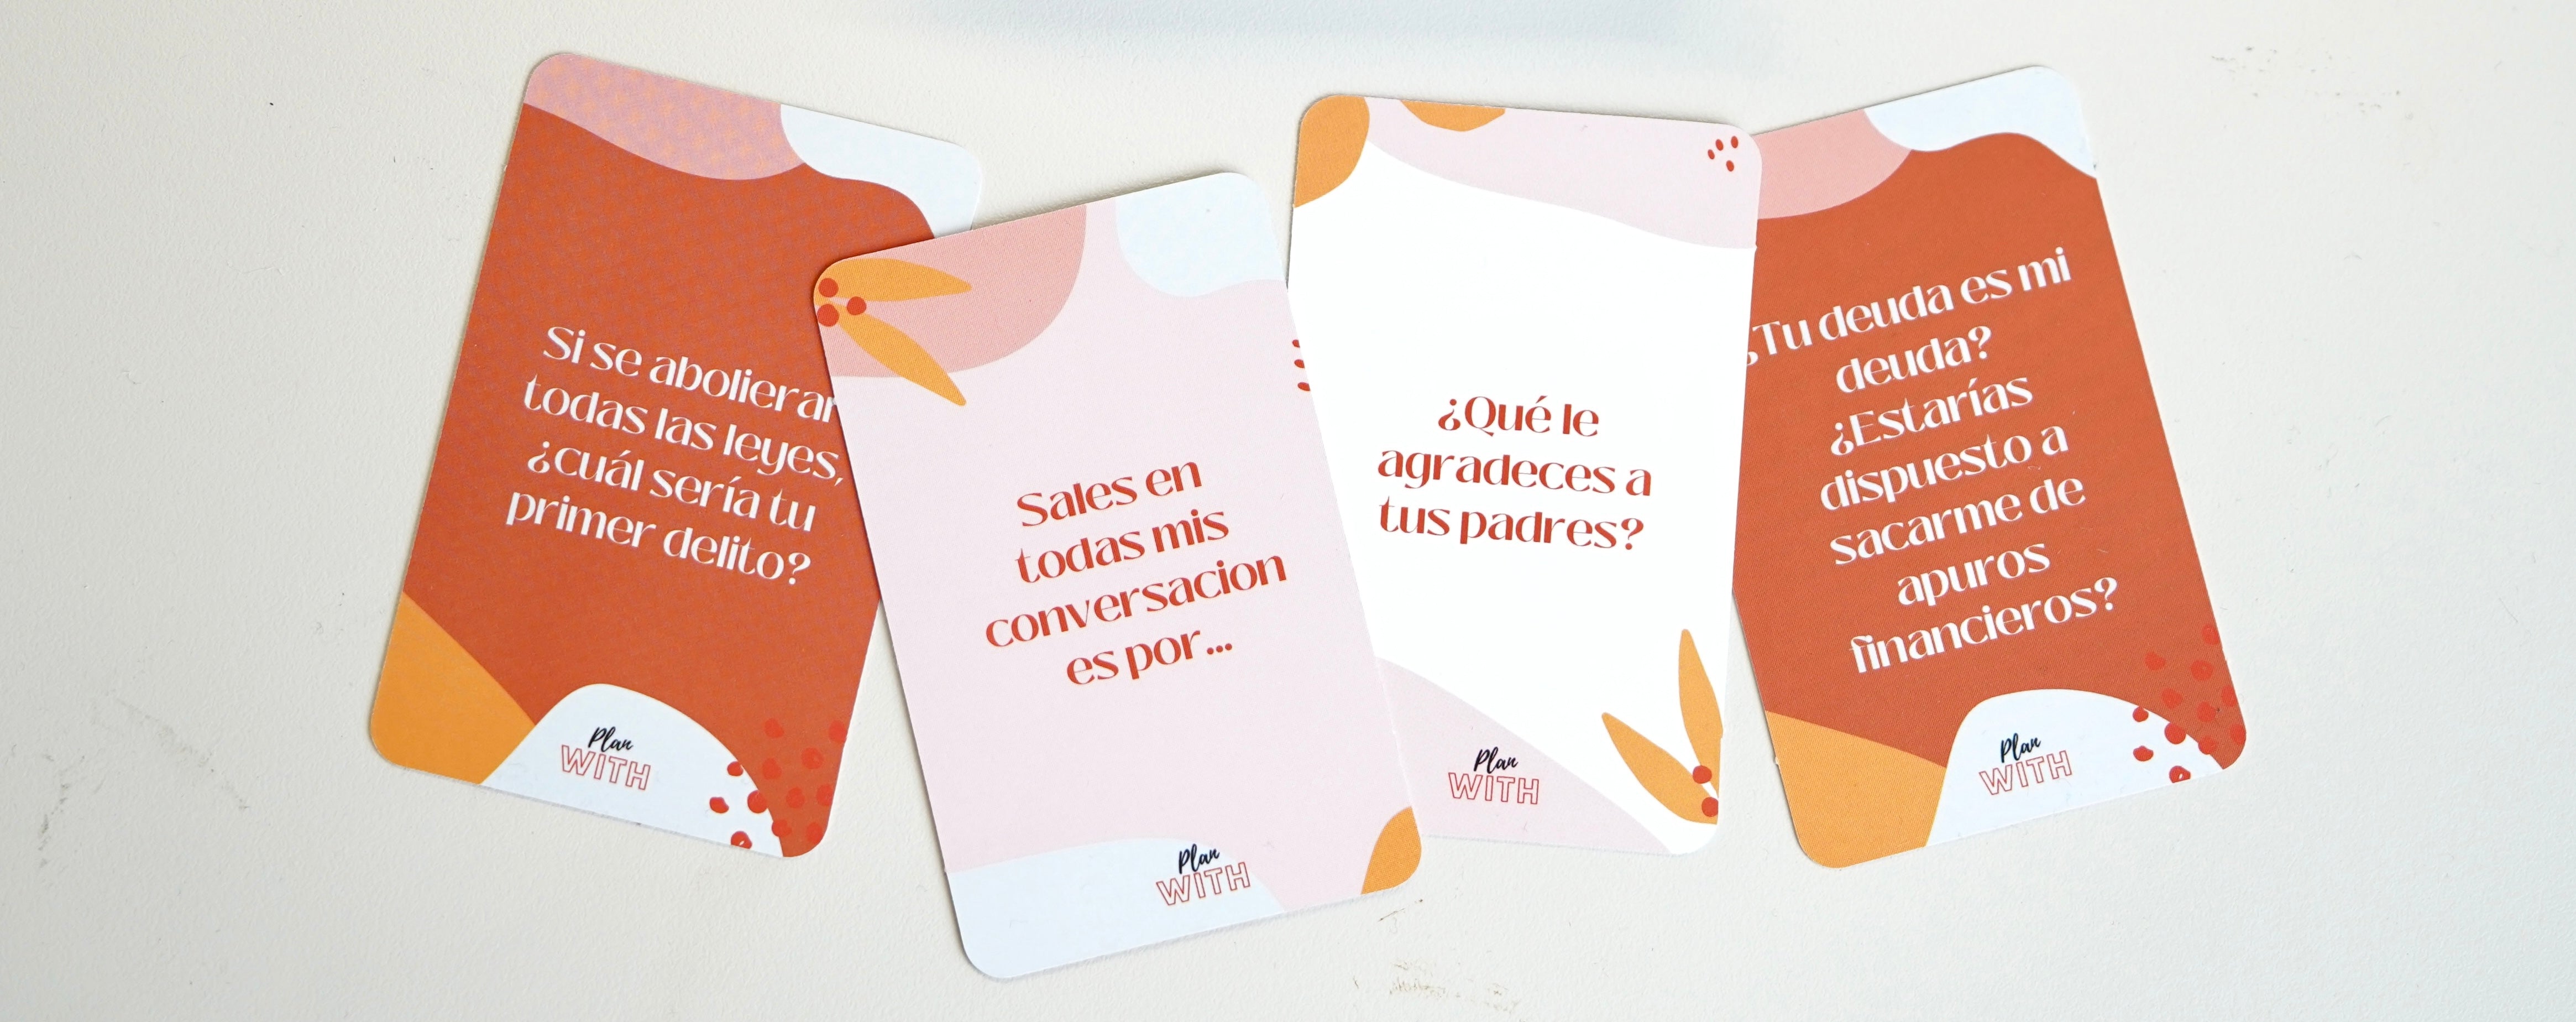 Pacote de Placas "EU TE AMO" com fotos + Plano de jogo de cartas com perguntas a dois